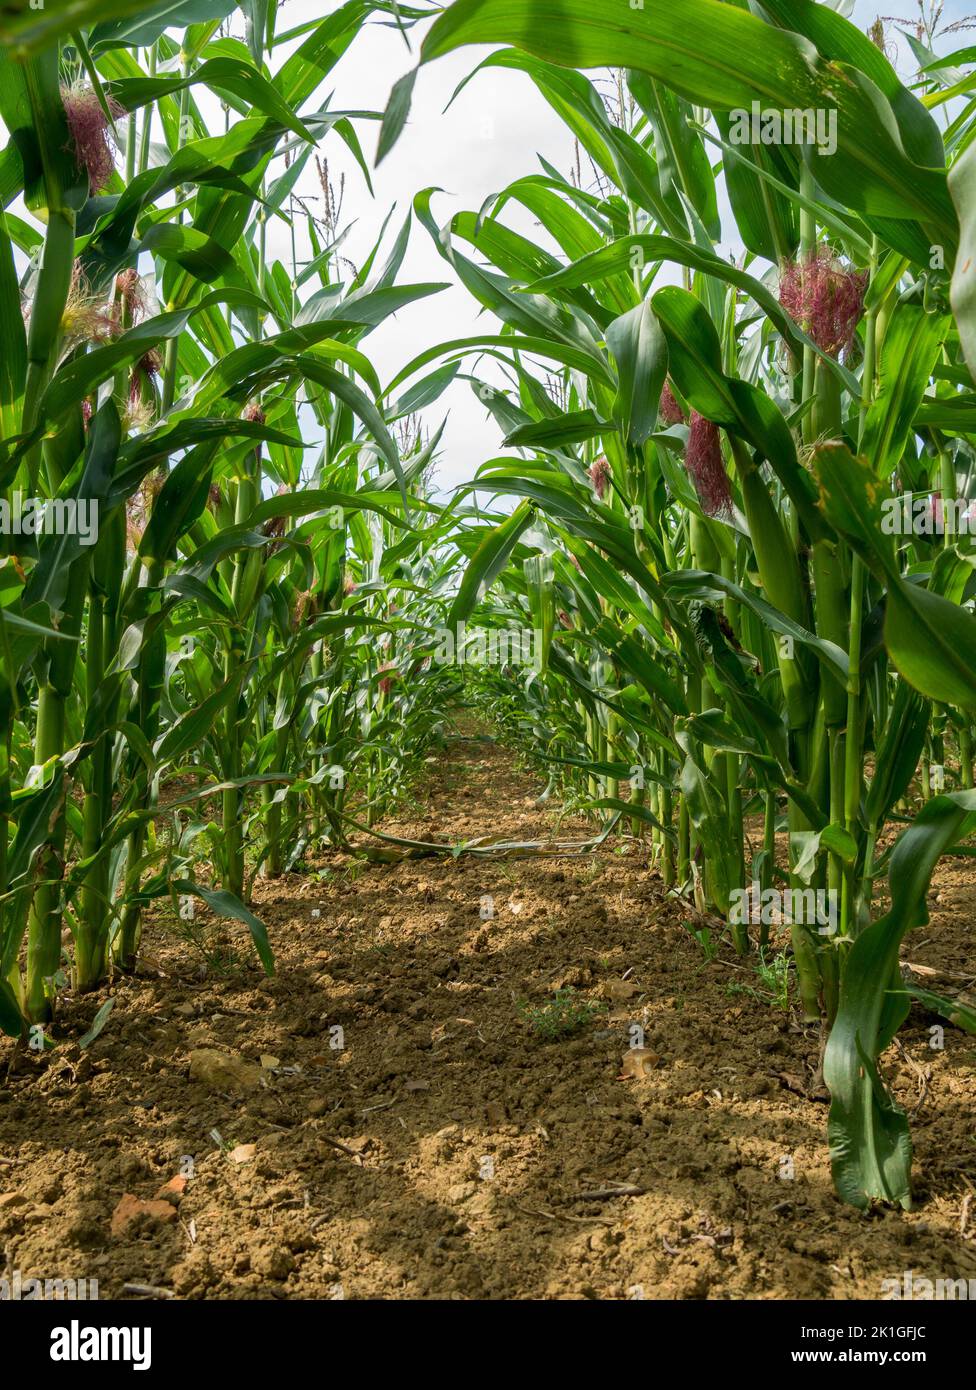 Vue entre les rangées de tiges de maïs doux poussant dans le champ agricole, Leicestershire, Angleterre, Royaume-Uni Banque D'Images